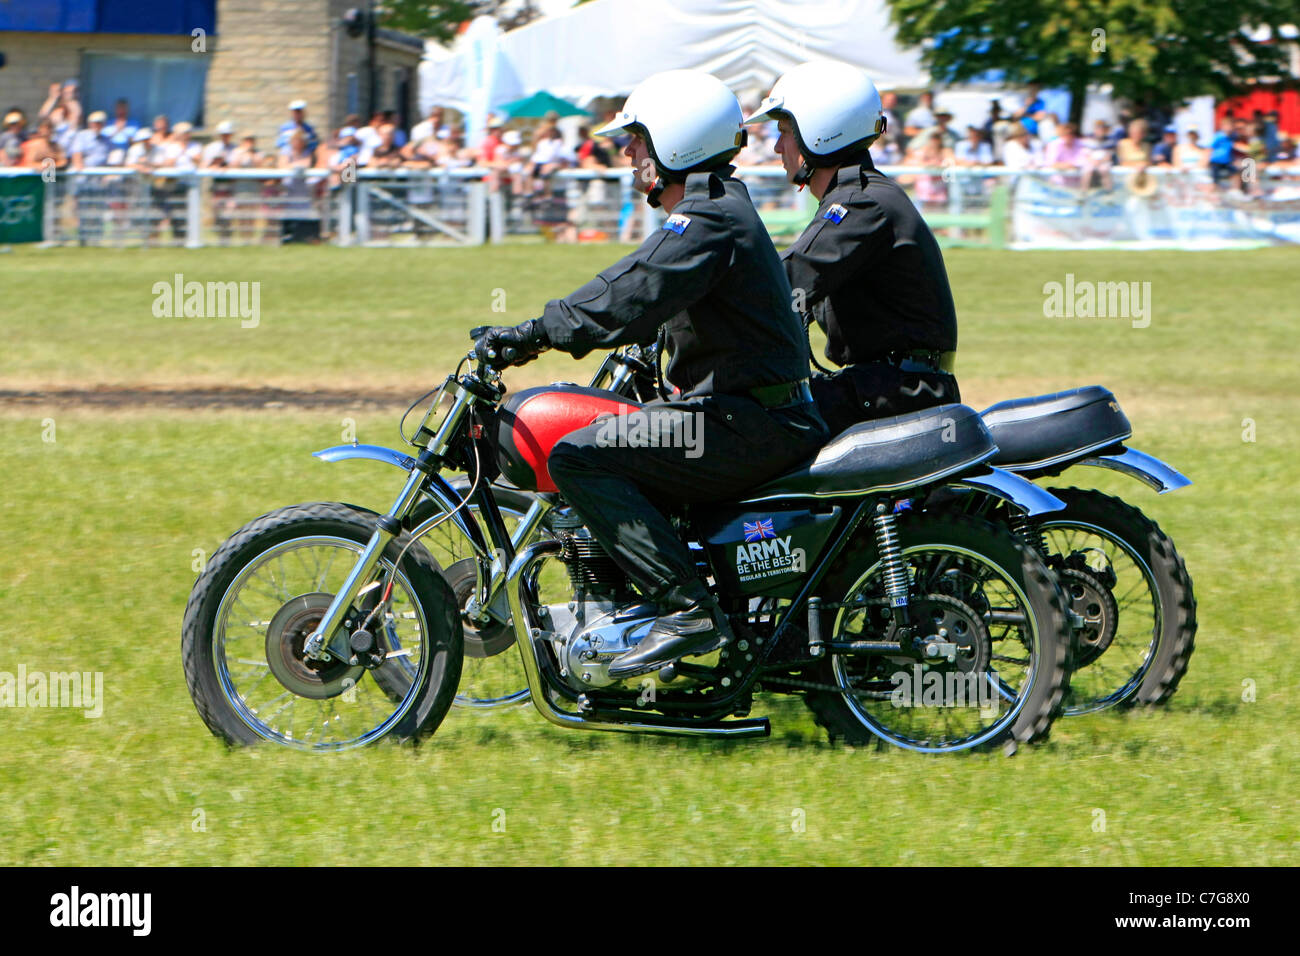 Royal Corp de señales motocicleta Mostrar Equipo en el Bath & West show en Somerset Foto de stock